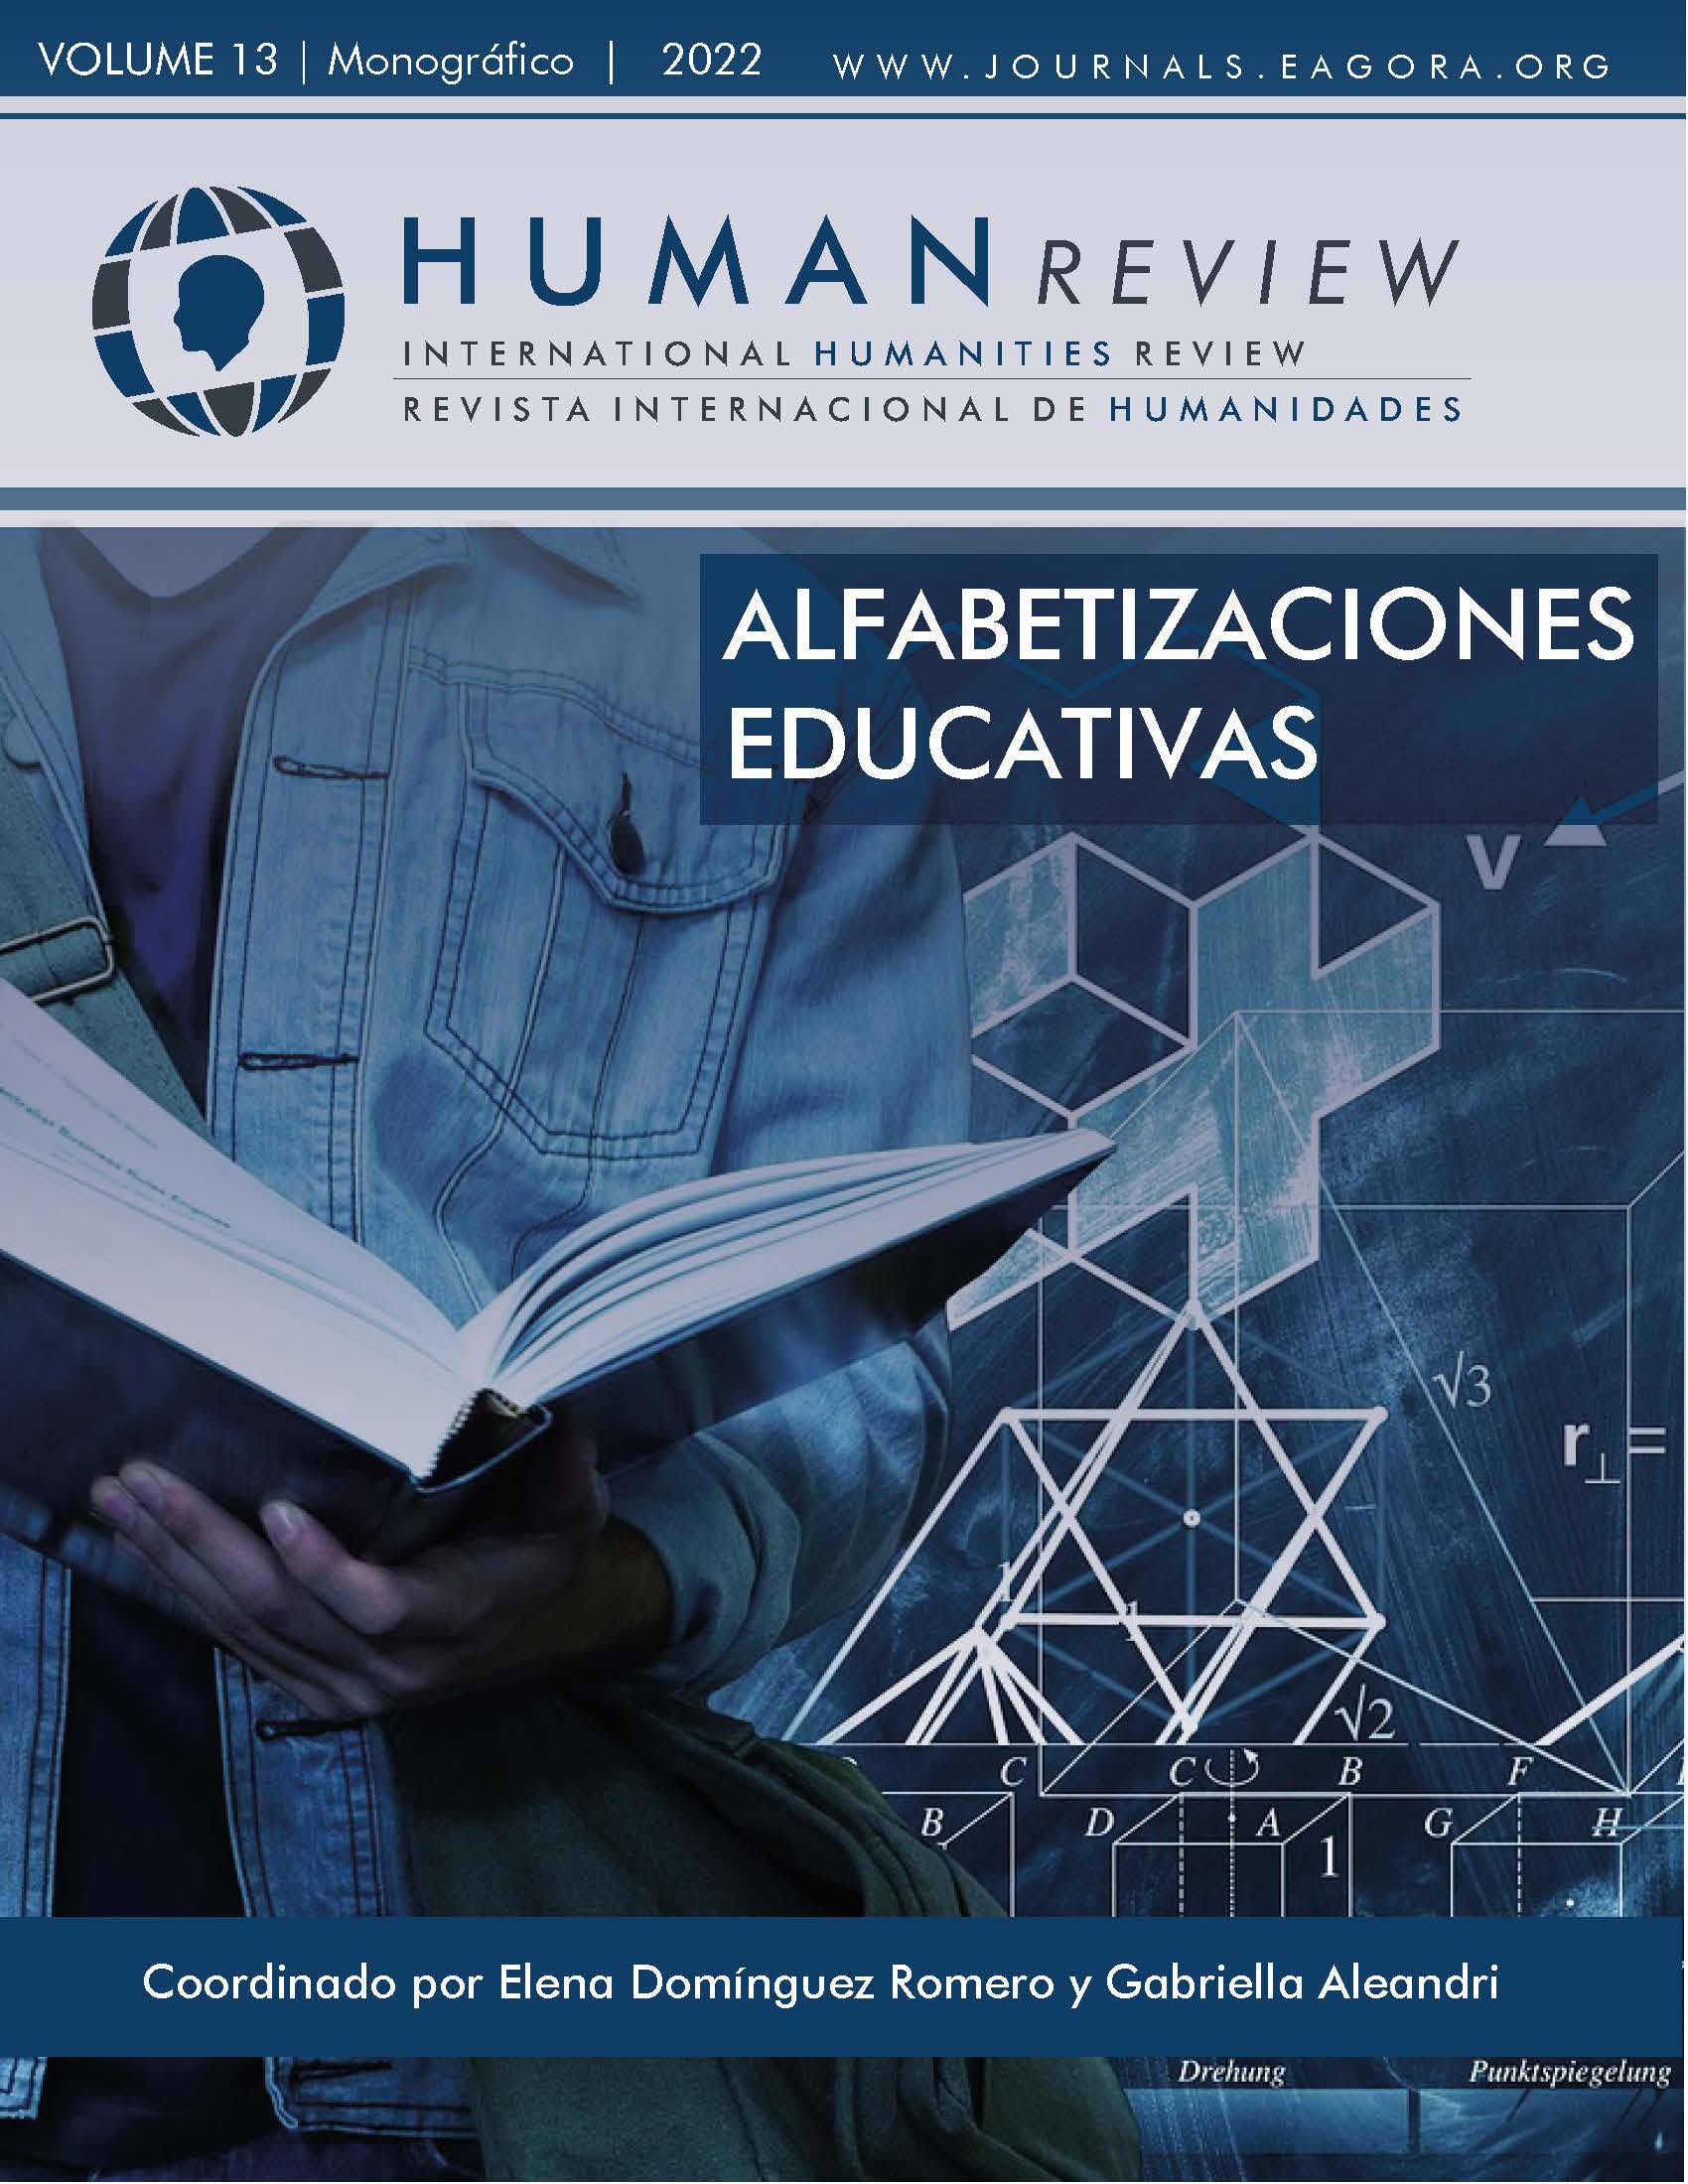 					Visualizar v. 13 n. 1 (2022): Monografía: "Alfabetização educacional"
				